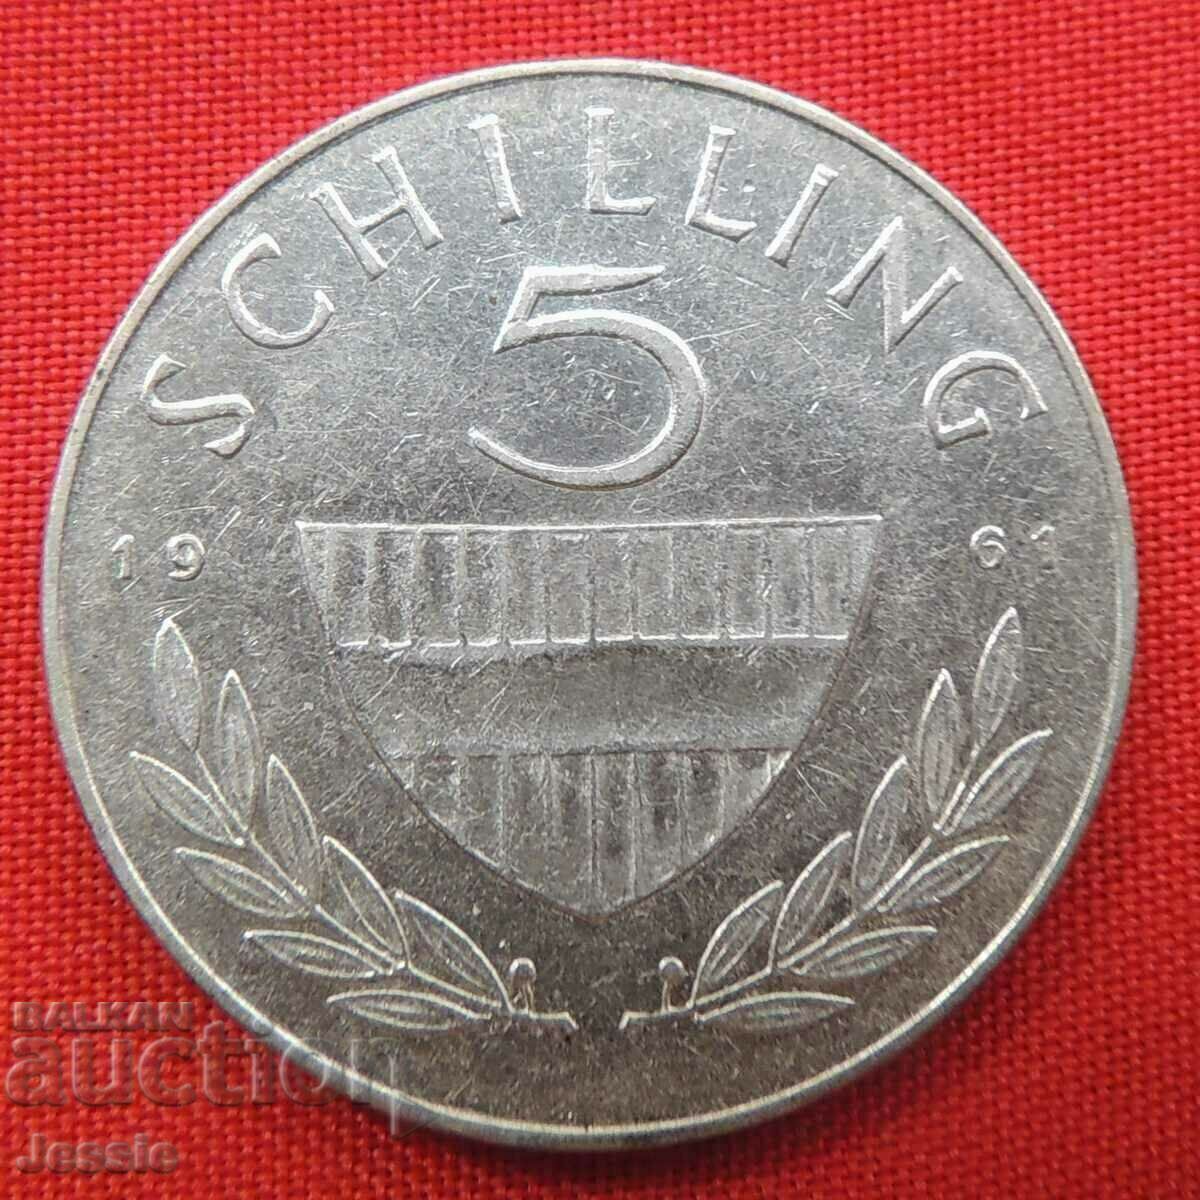 5 шилинга 1961 г. Австрия сребро Качество-